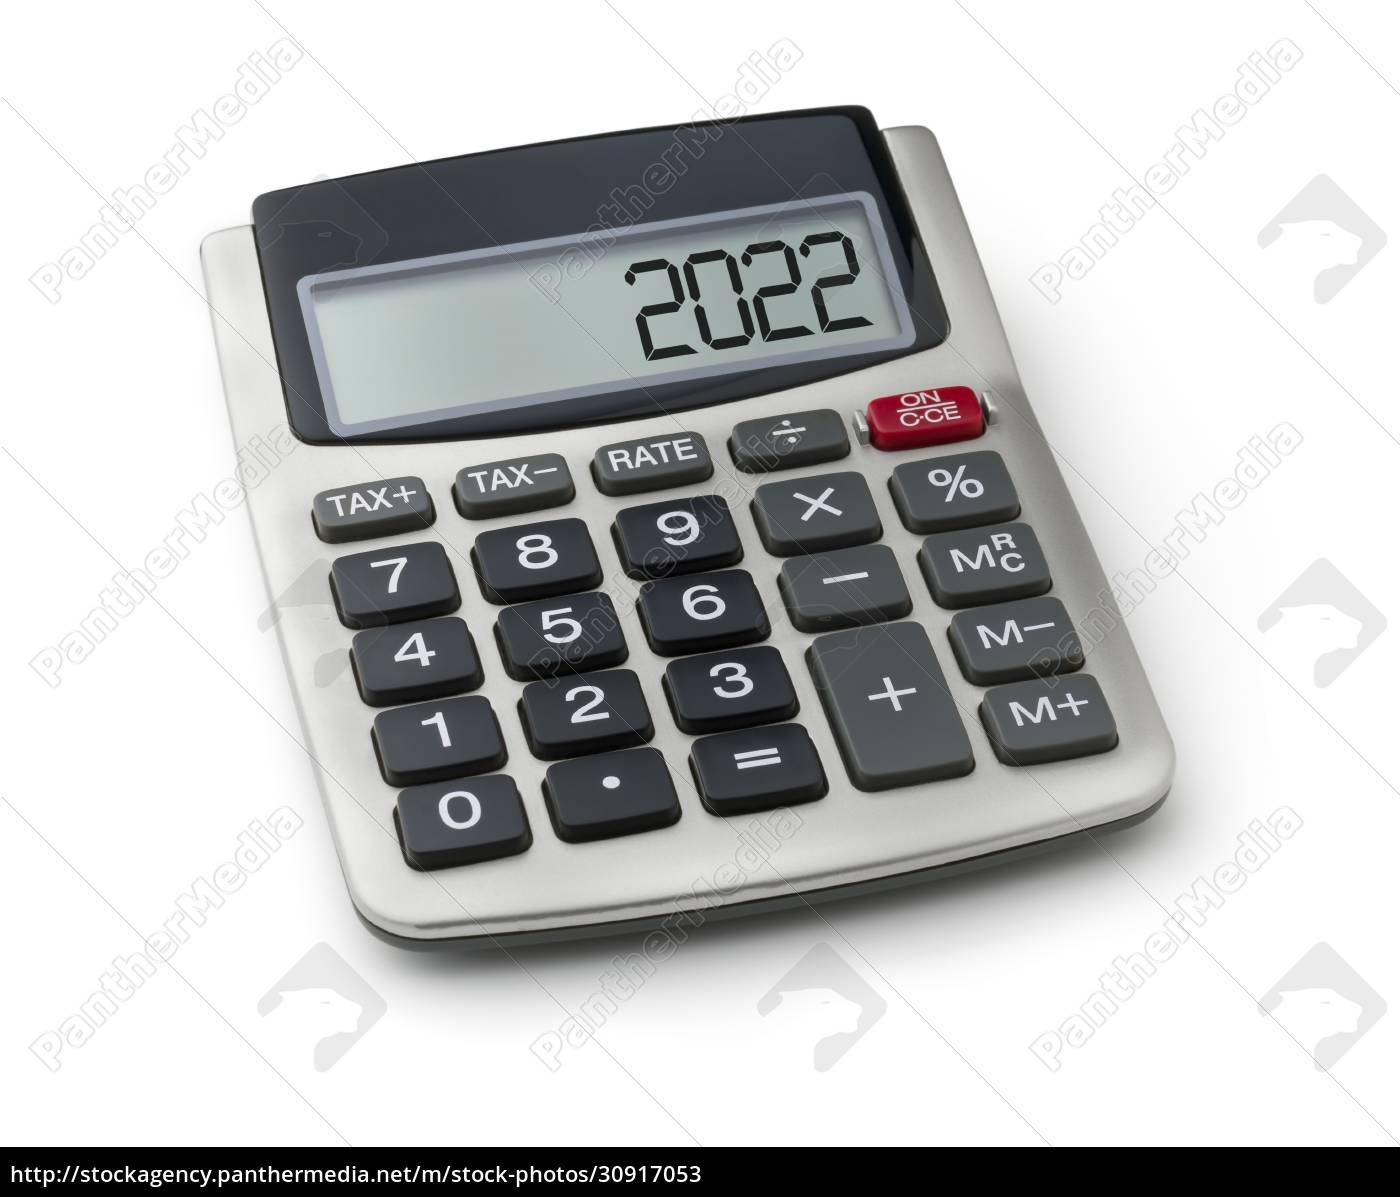 calculator-with-the-word-2022-on-the-display-lizenzfreies-bild-30917053-bildagentur